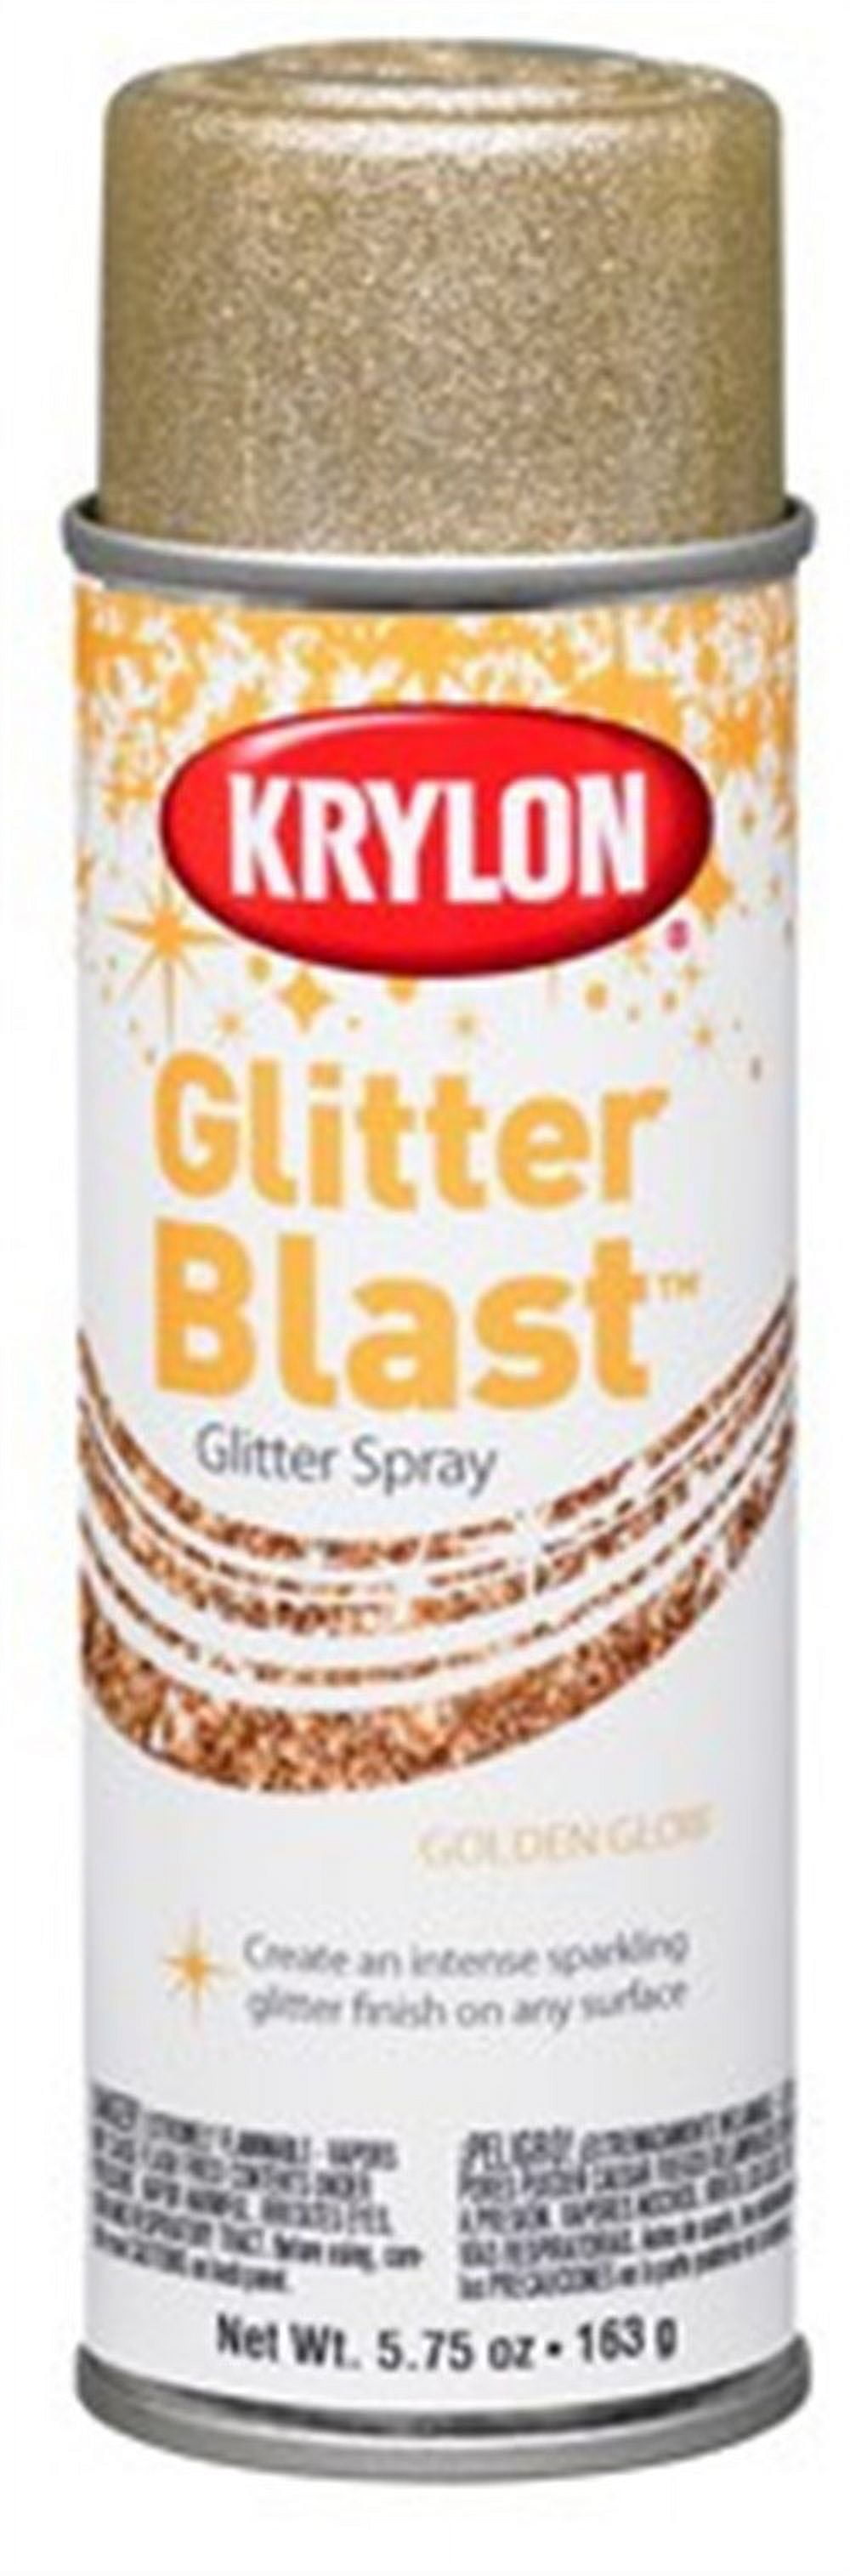 Krylon K03815A00 Craft Spray Paint, Glitter, Fierce Fuchs